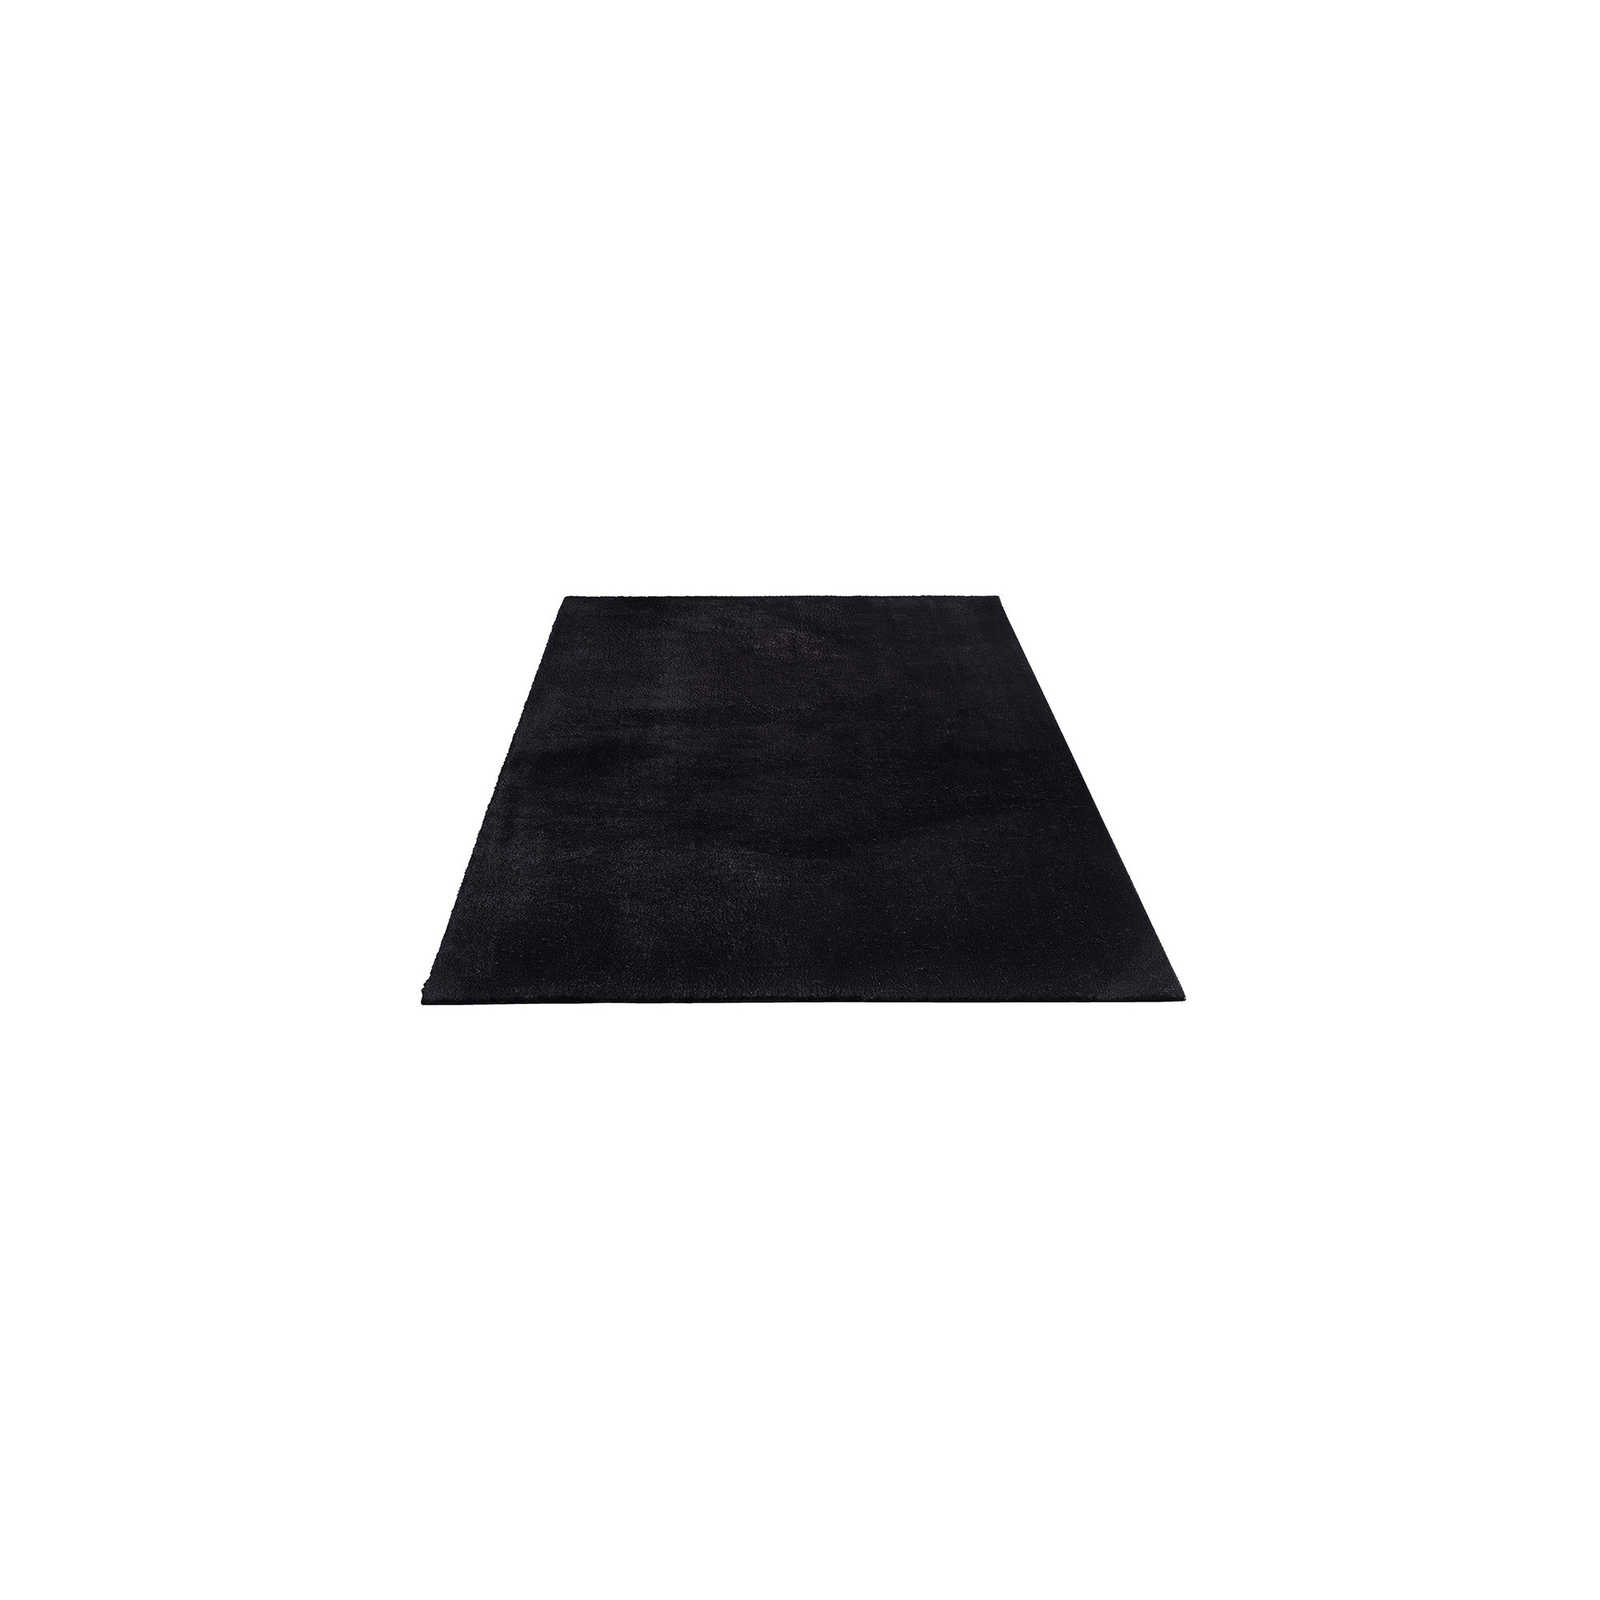 Velvety high pile carpet in black - 170 x 120 cm
